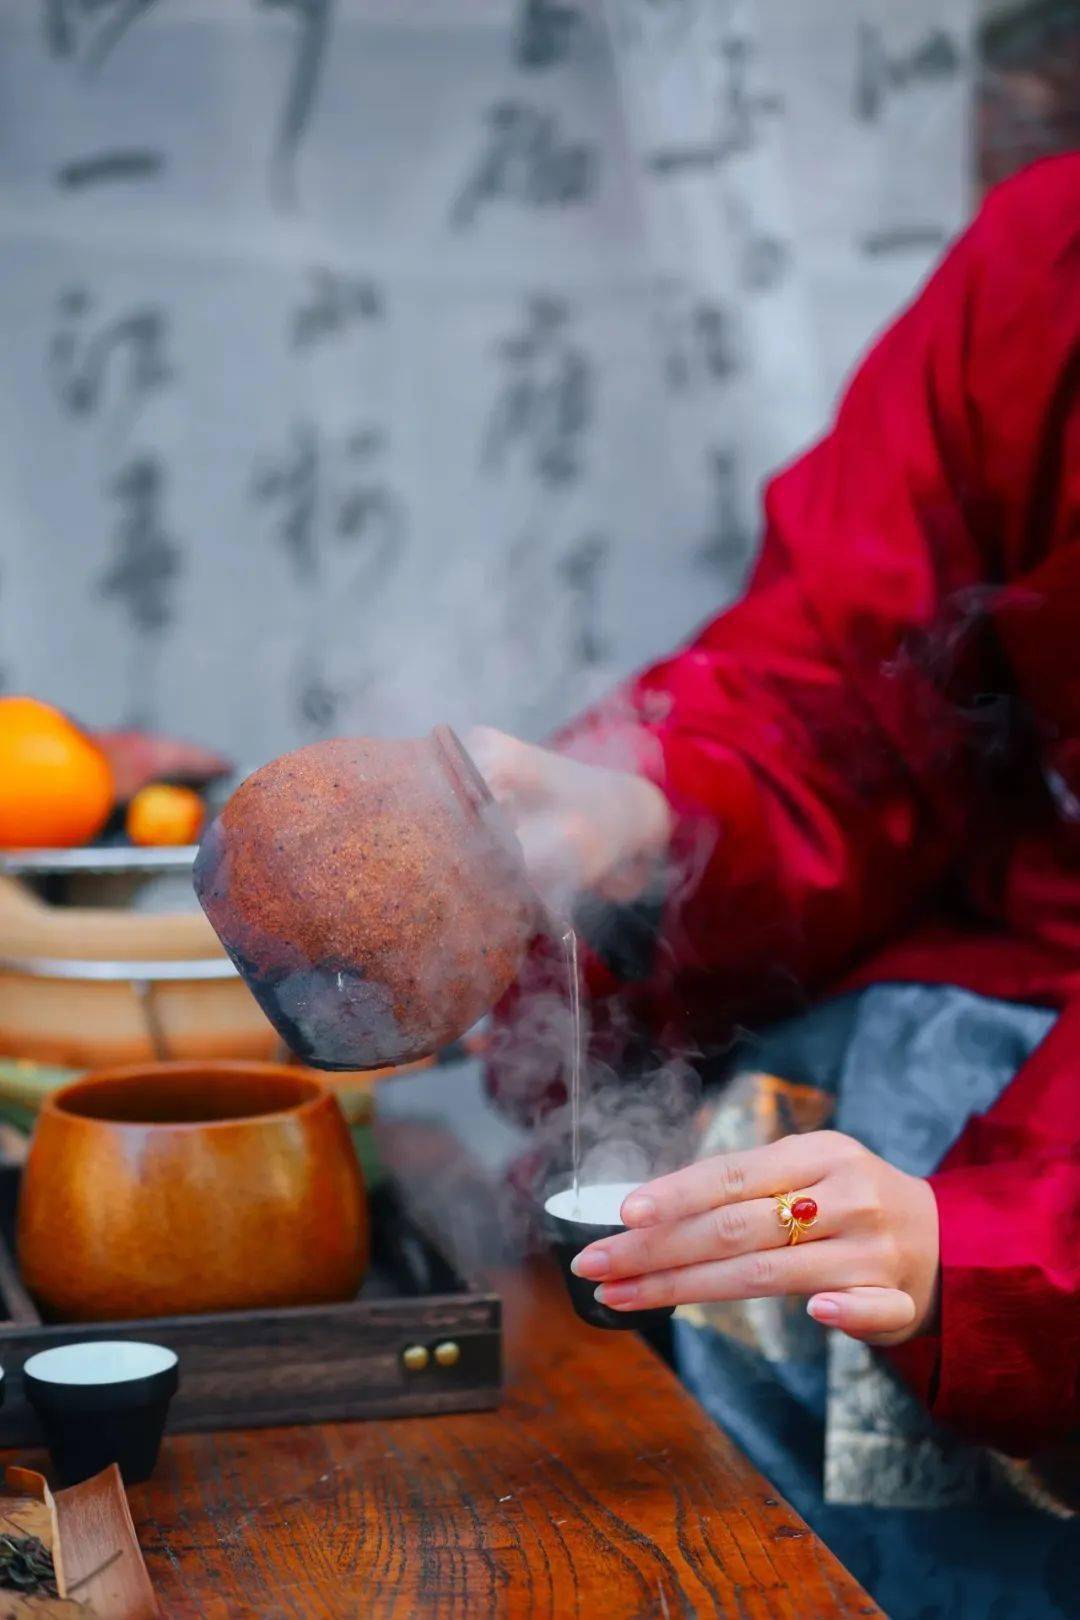 过海茶库提供了各式各样的煮茶辅料:干玫瑰花,红枣